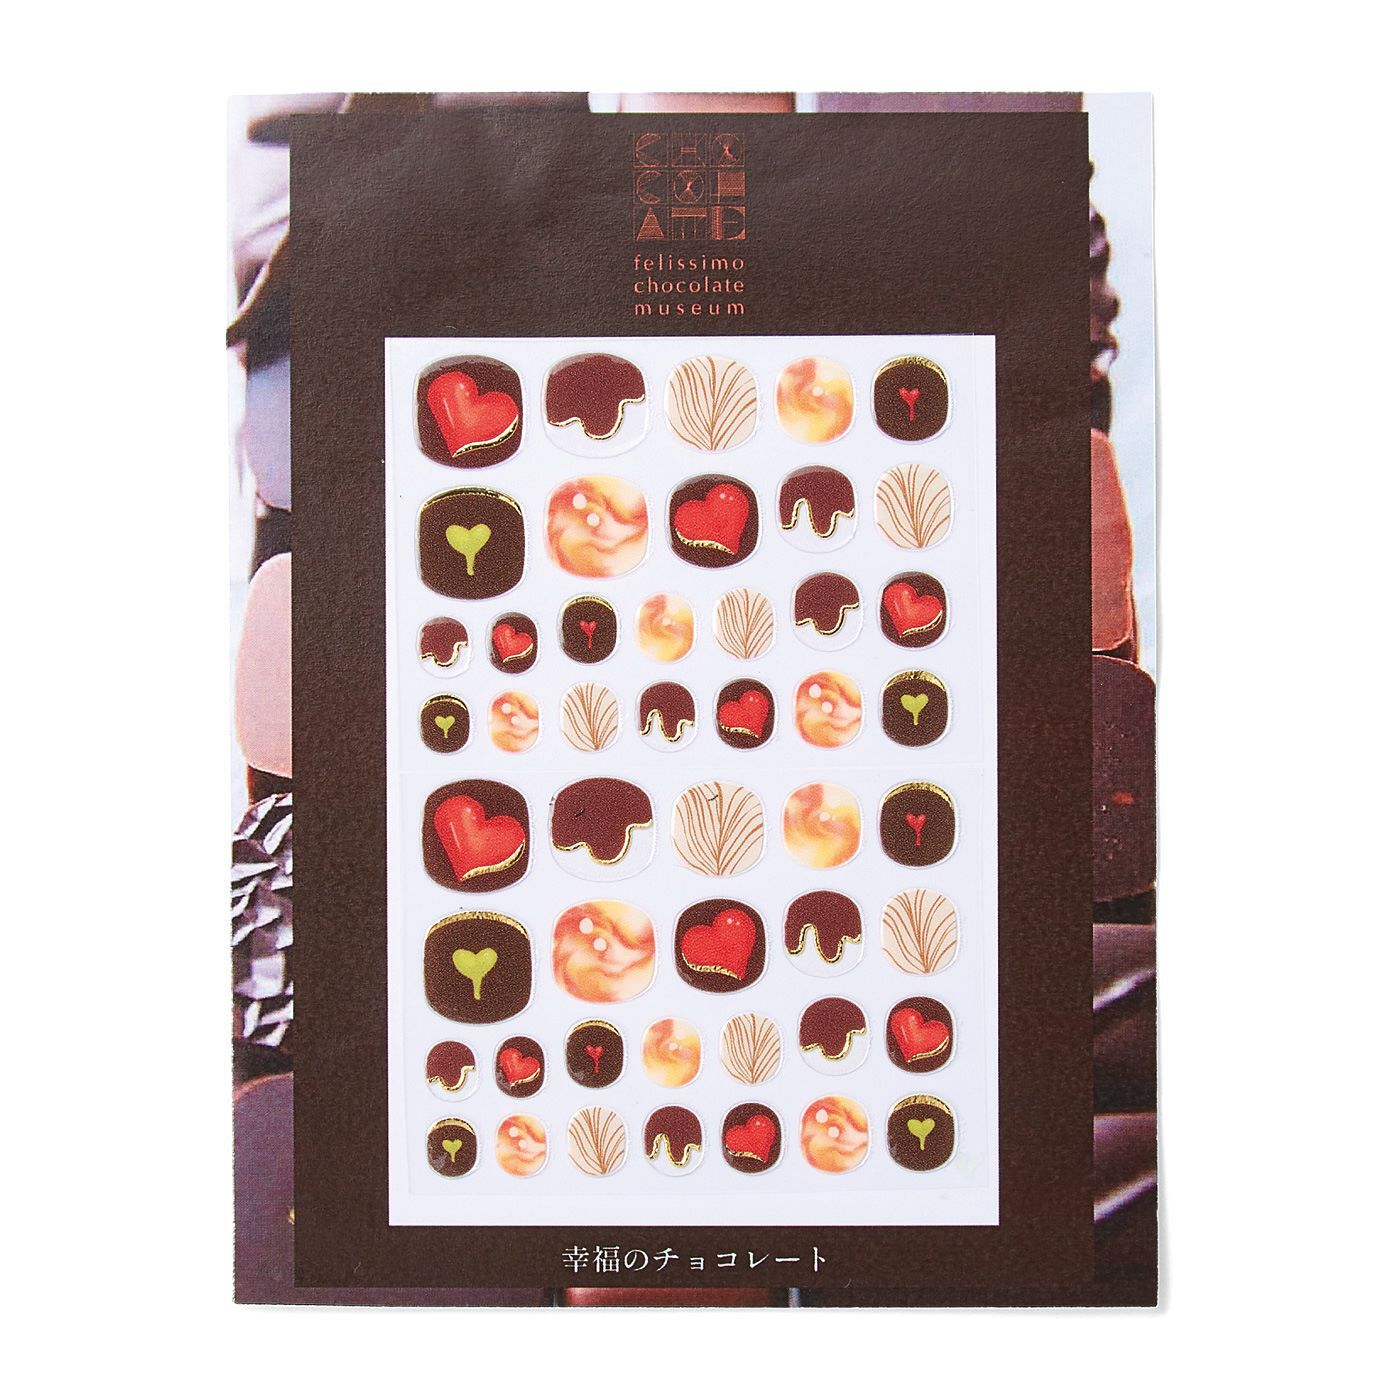 フェリシモの雑貨 Kraso|フェリシモ チョコレート ミュージアム　世界のショコラティエとコラボしたチョコ柄ネイルシールの会|そのまま贈り物にもできるパッケージでお届けします。